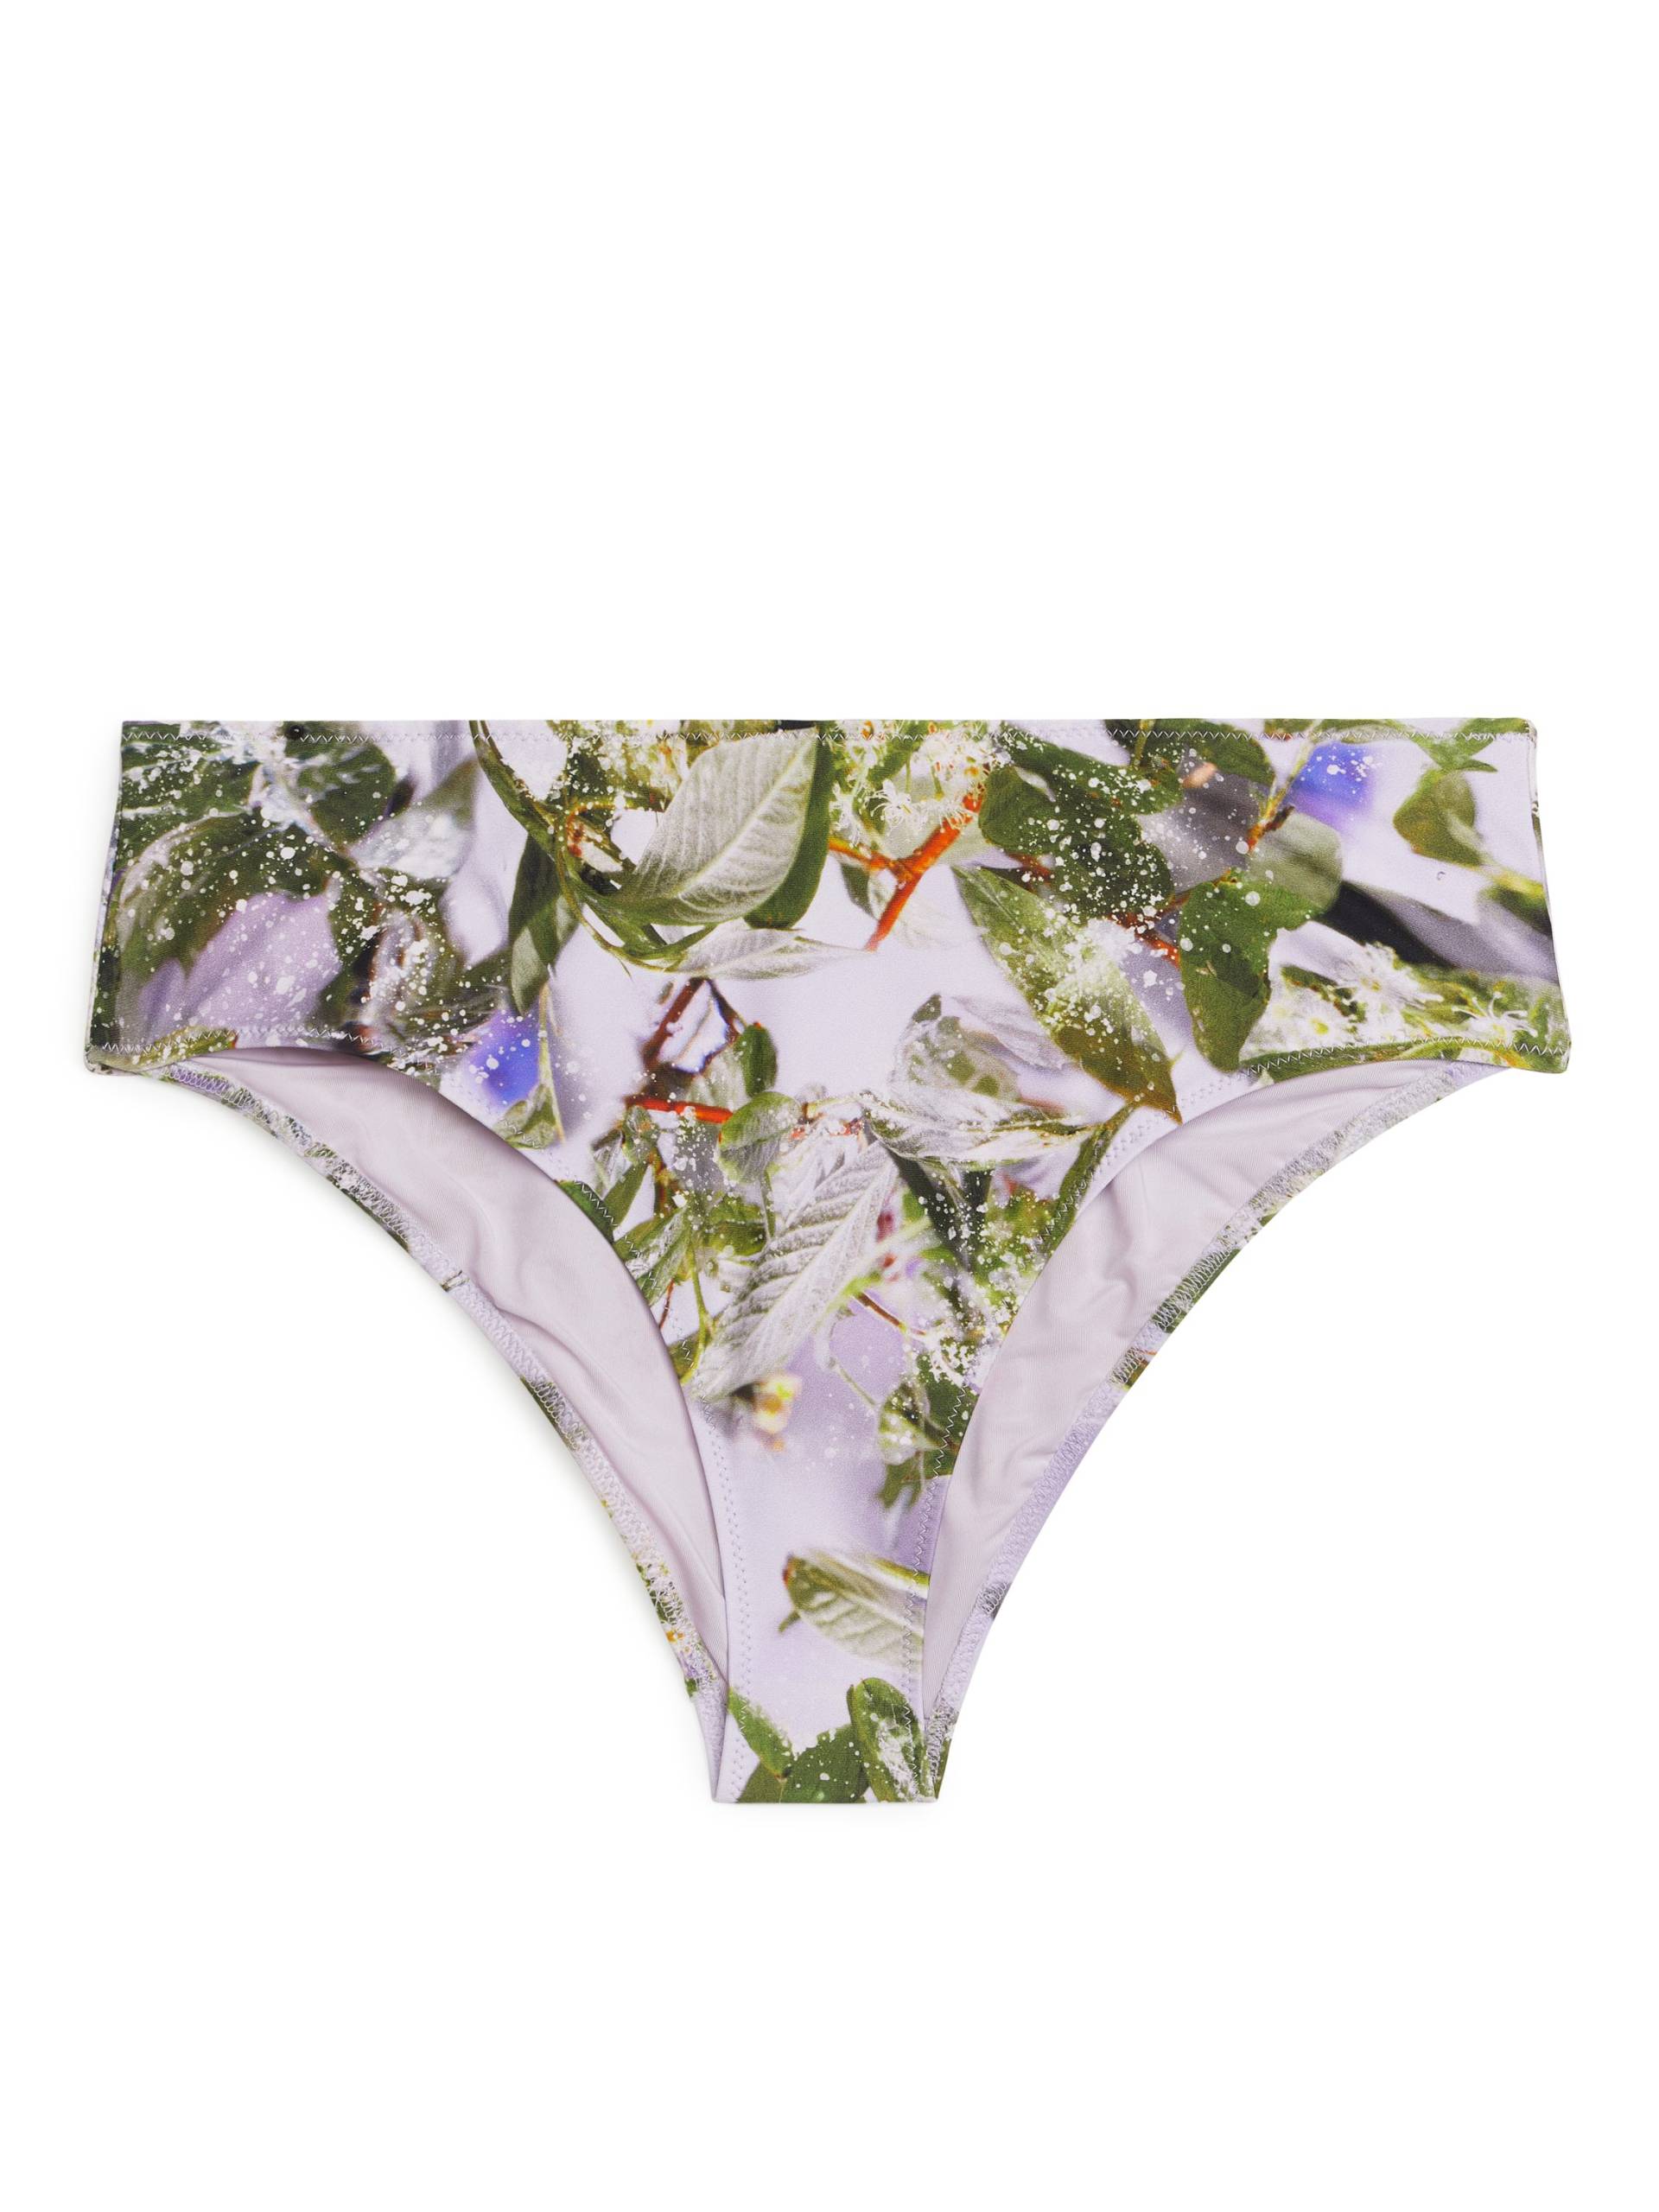 Arket Bikinihöschen mit Slowflower-Print Flieder/Blüten, Bikini-Unterteil in Größe 40. Farbe: Lilac/floral von Arket